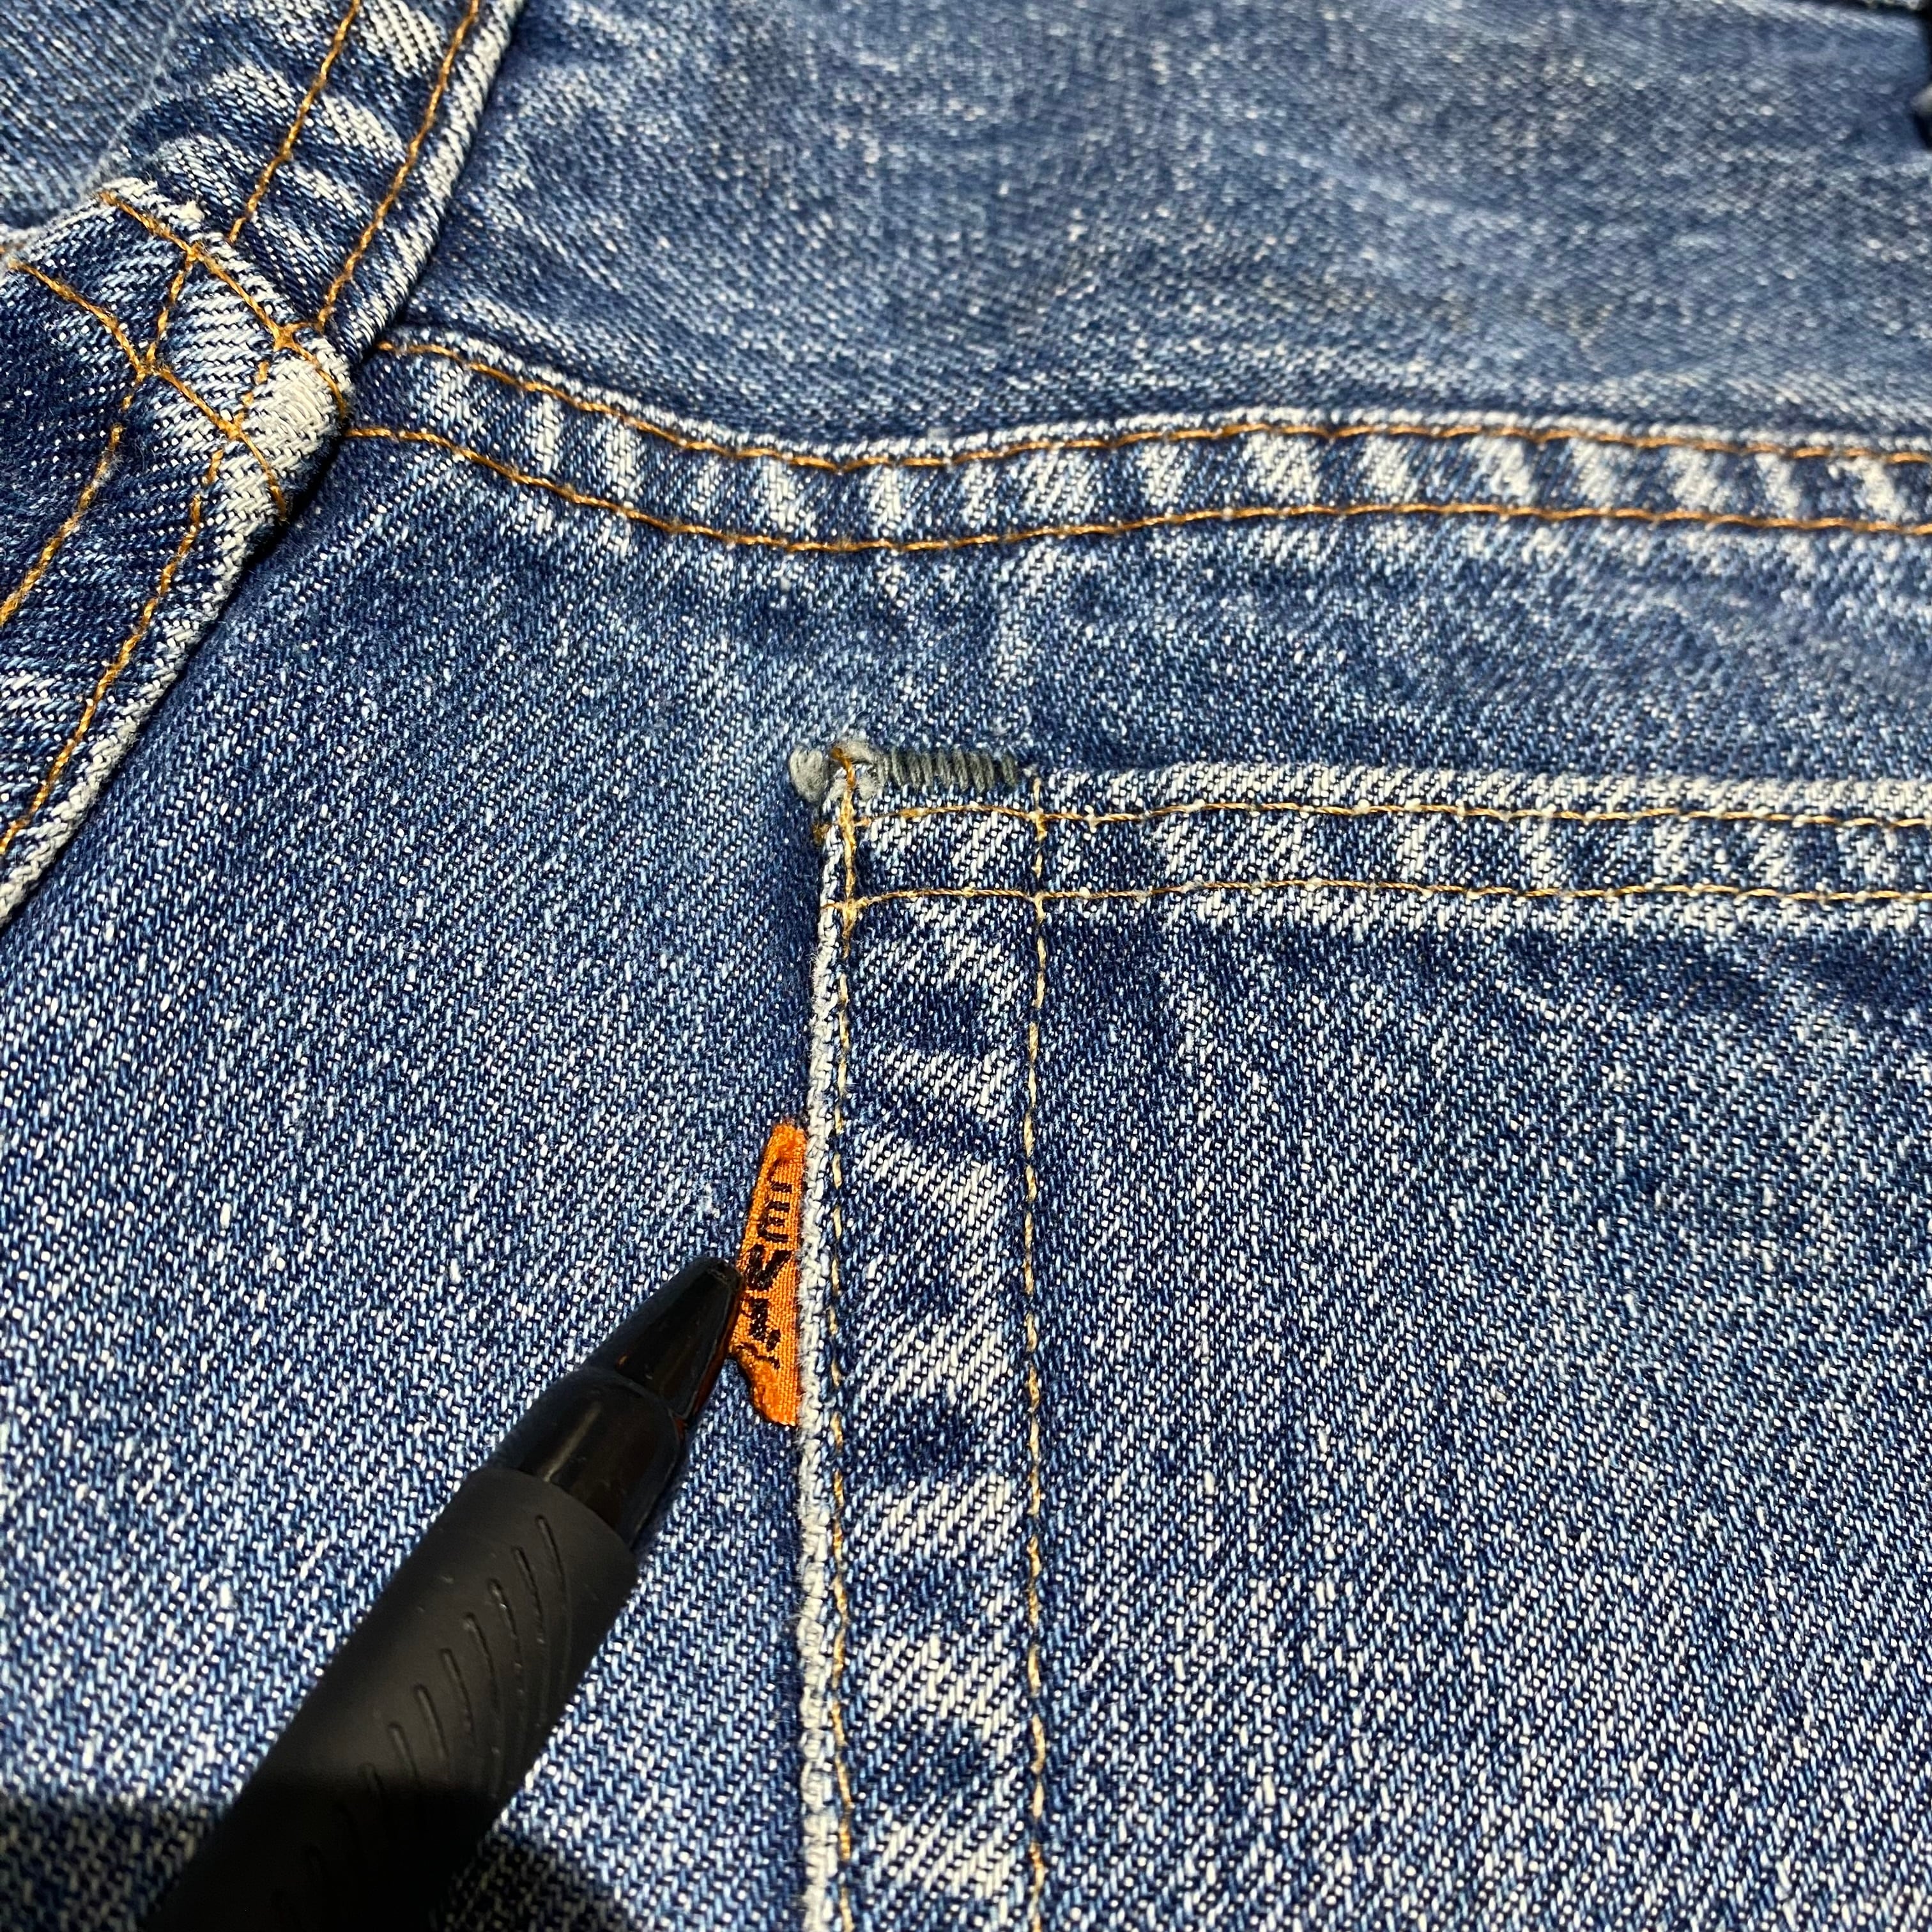 リーバイス Levi’s 70’s knit jeans 646 フレアパンツ